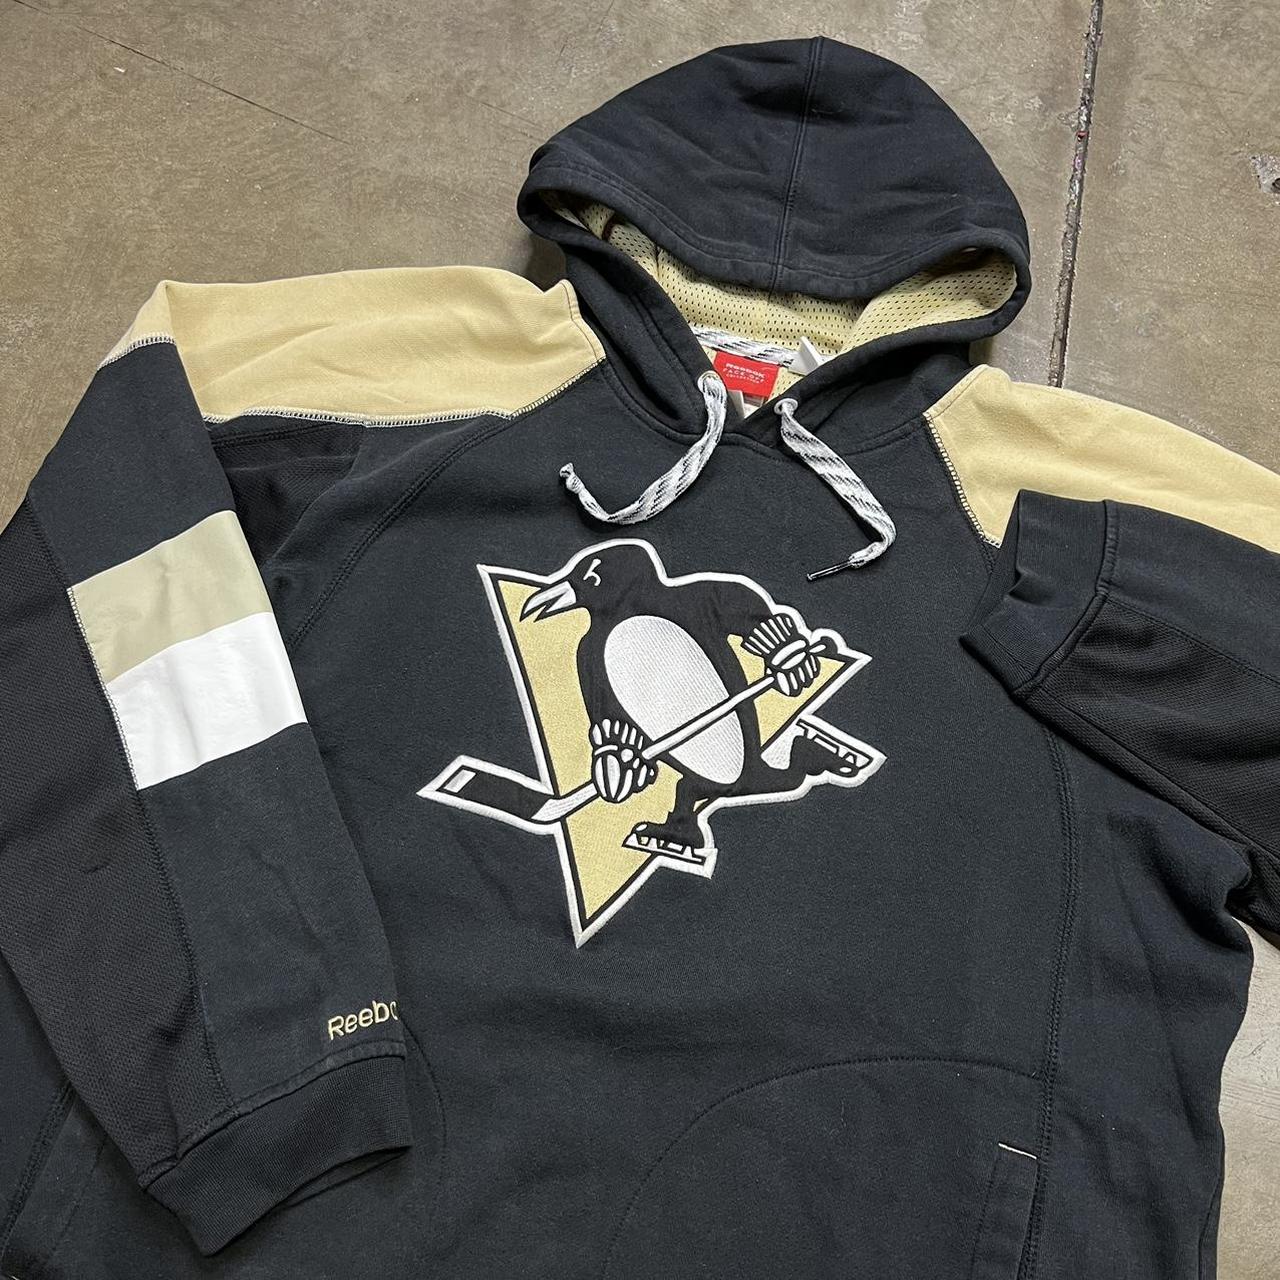 Pittsburgh Penguins Sweatshirt Hoodie - Reebok Pullover Black